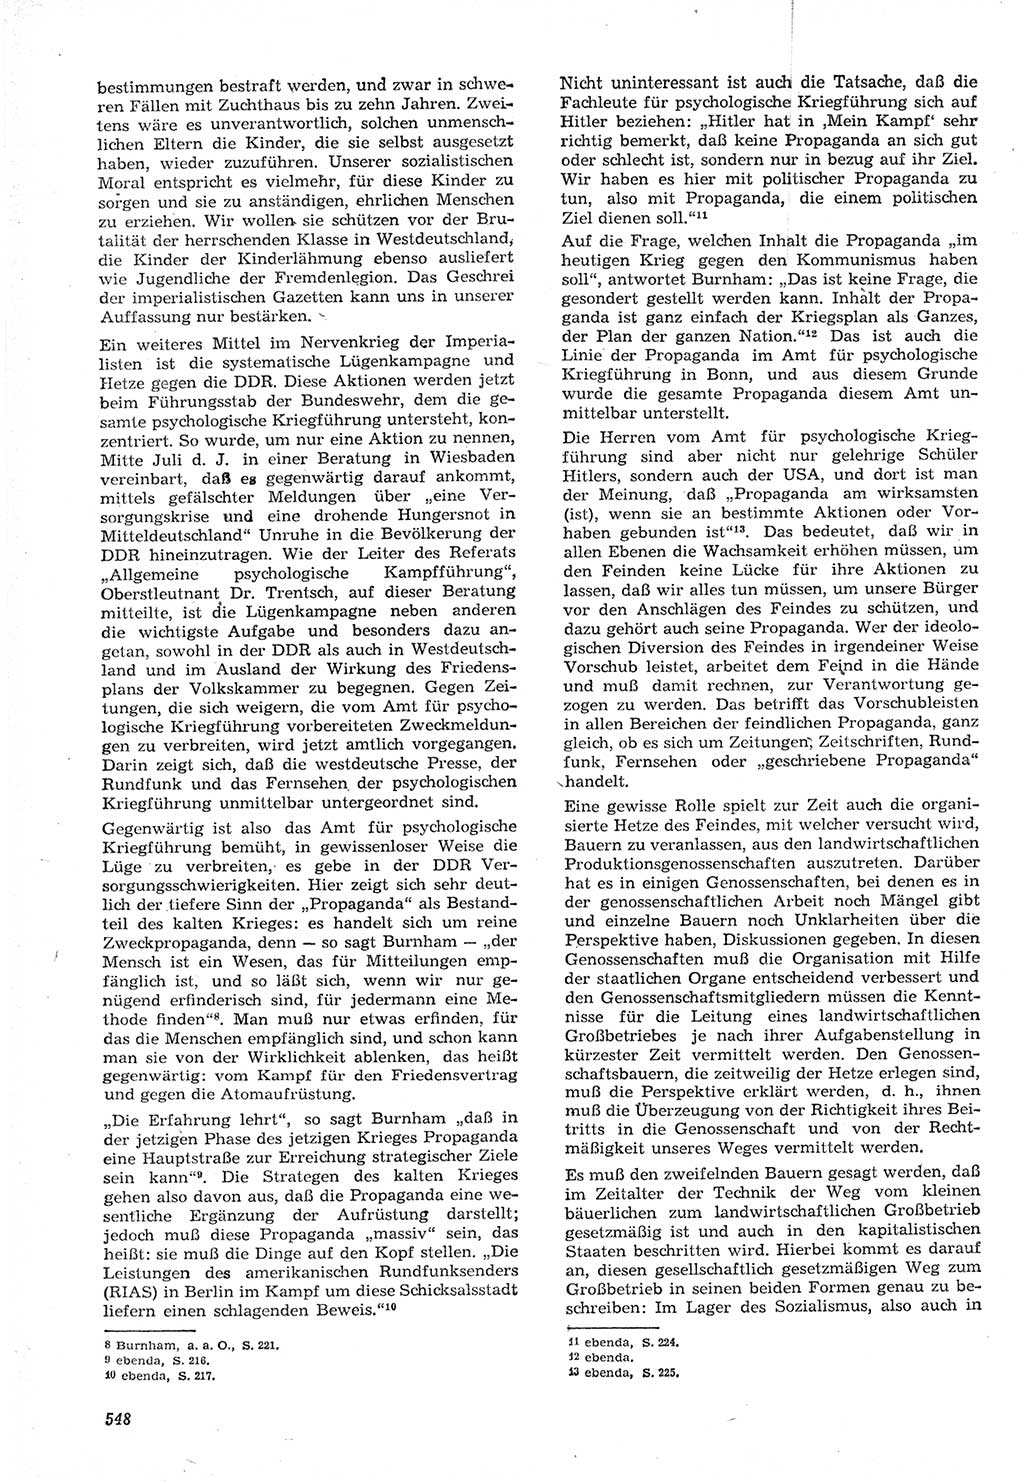 Neue Justiz (NJ), Zeitschrift für Recht und Rechtswissenschaft [Deutsche Demokratische Republik (DDR)], 15. Jahrgang 1961, Seite 548 (NJ DDR 1961, S. 548)